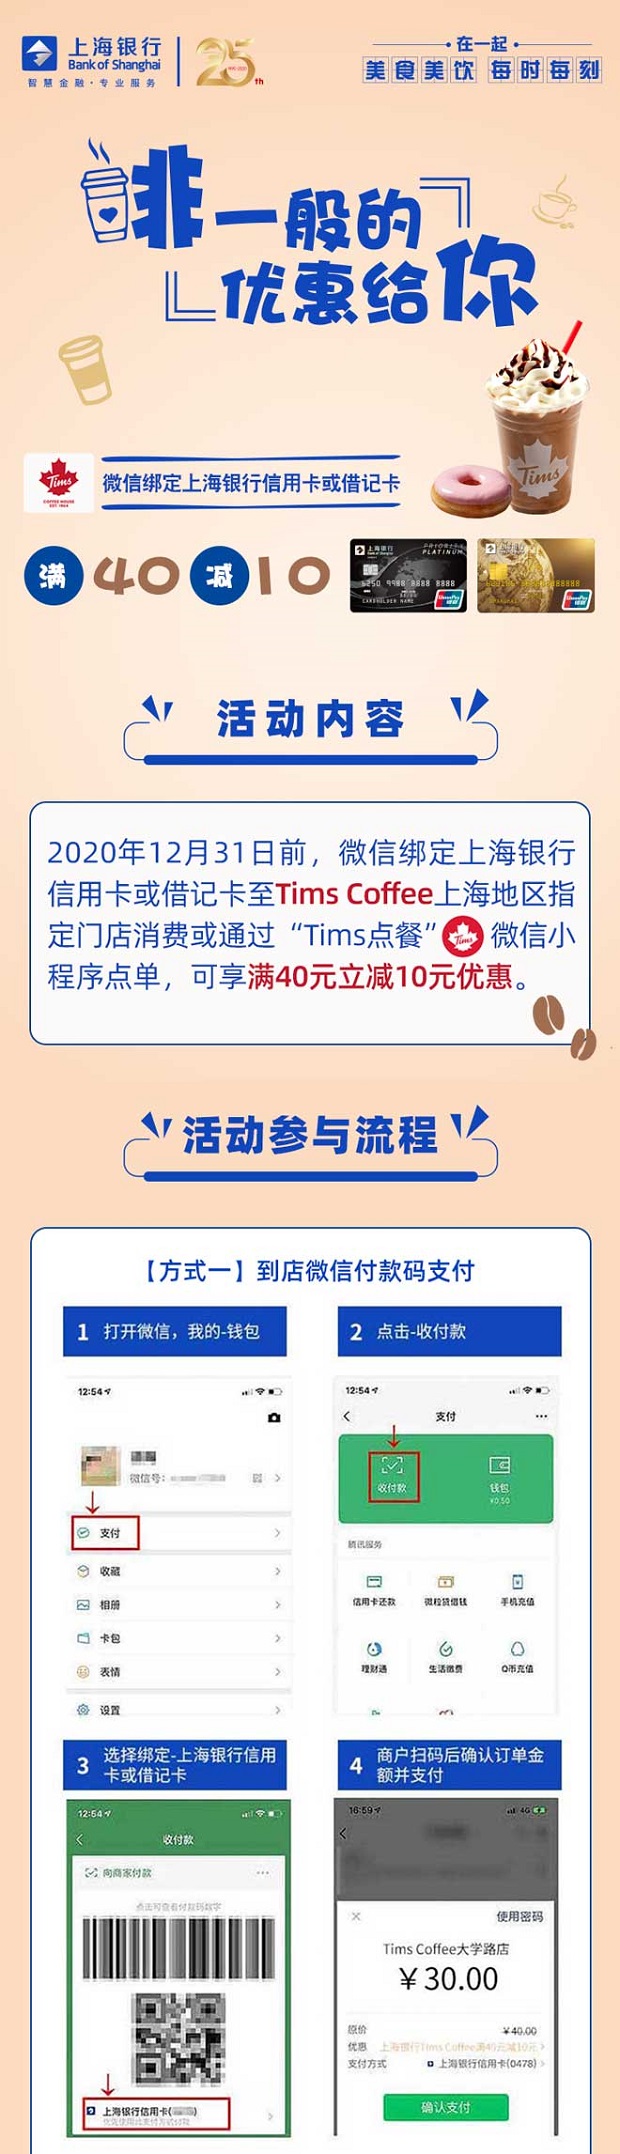 上海银行信用卡Tims Coffee满40减10元